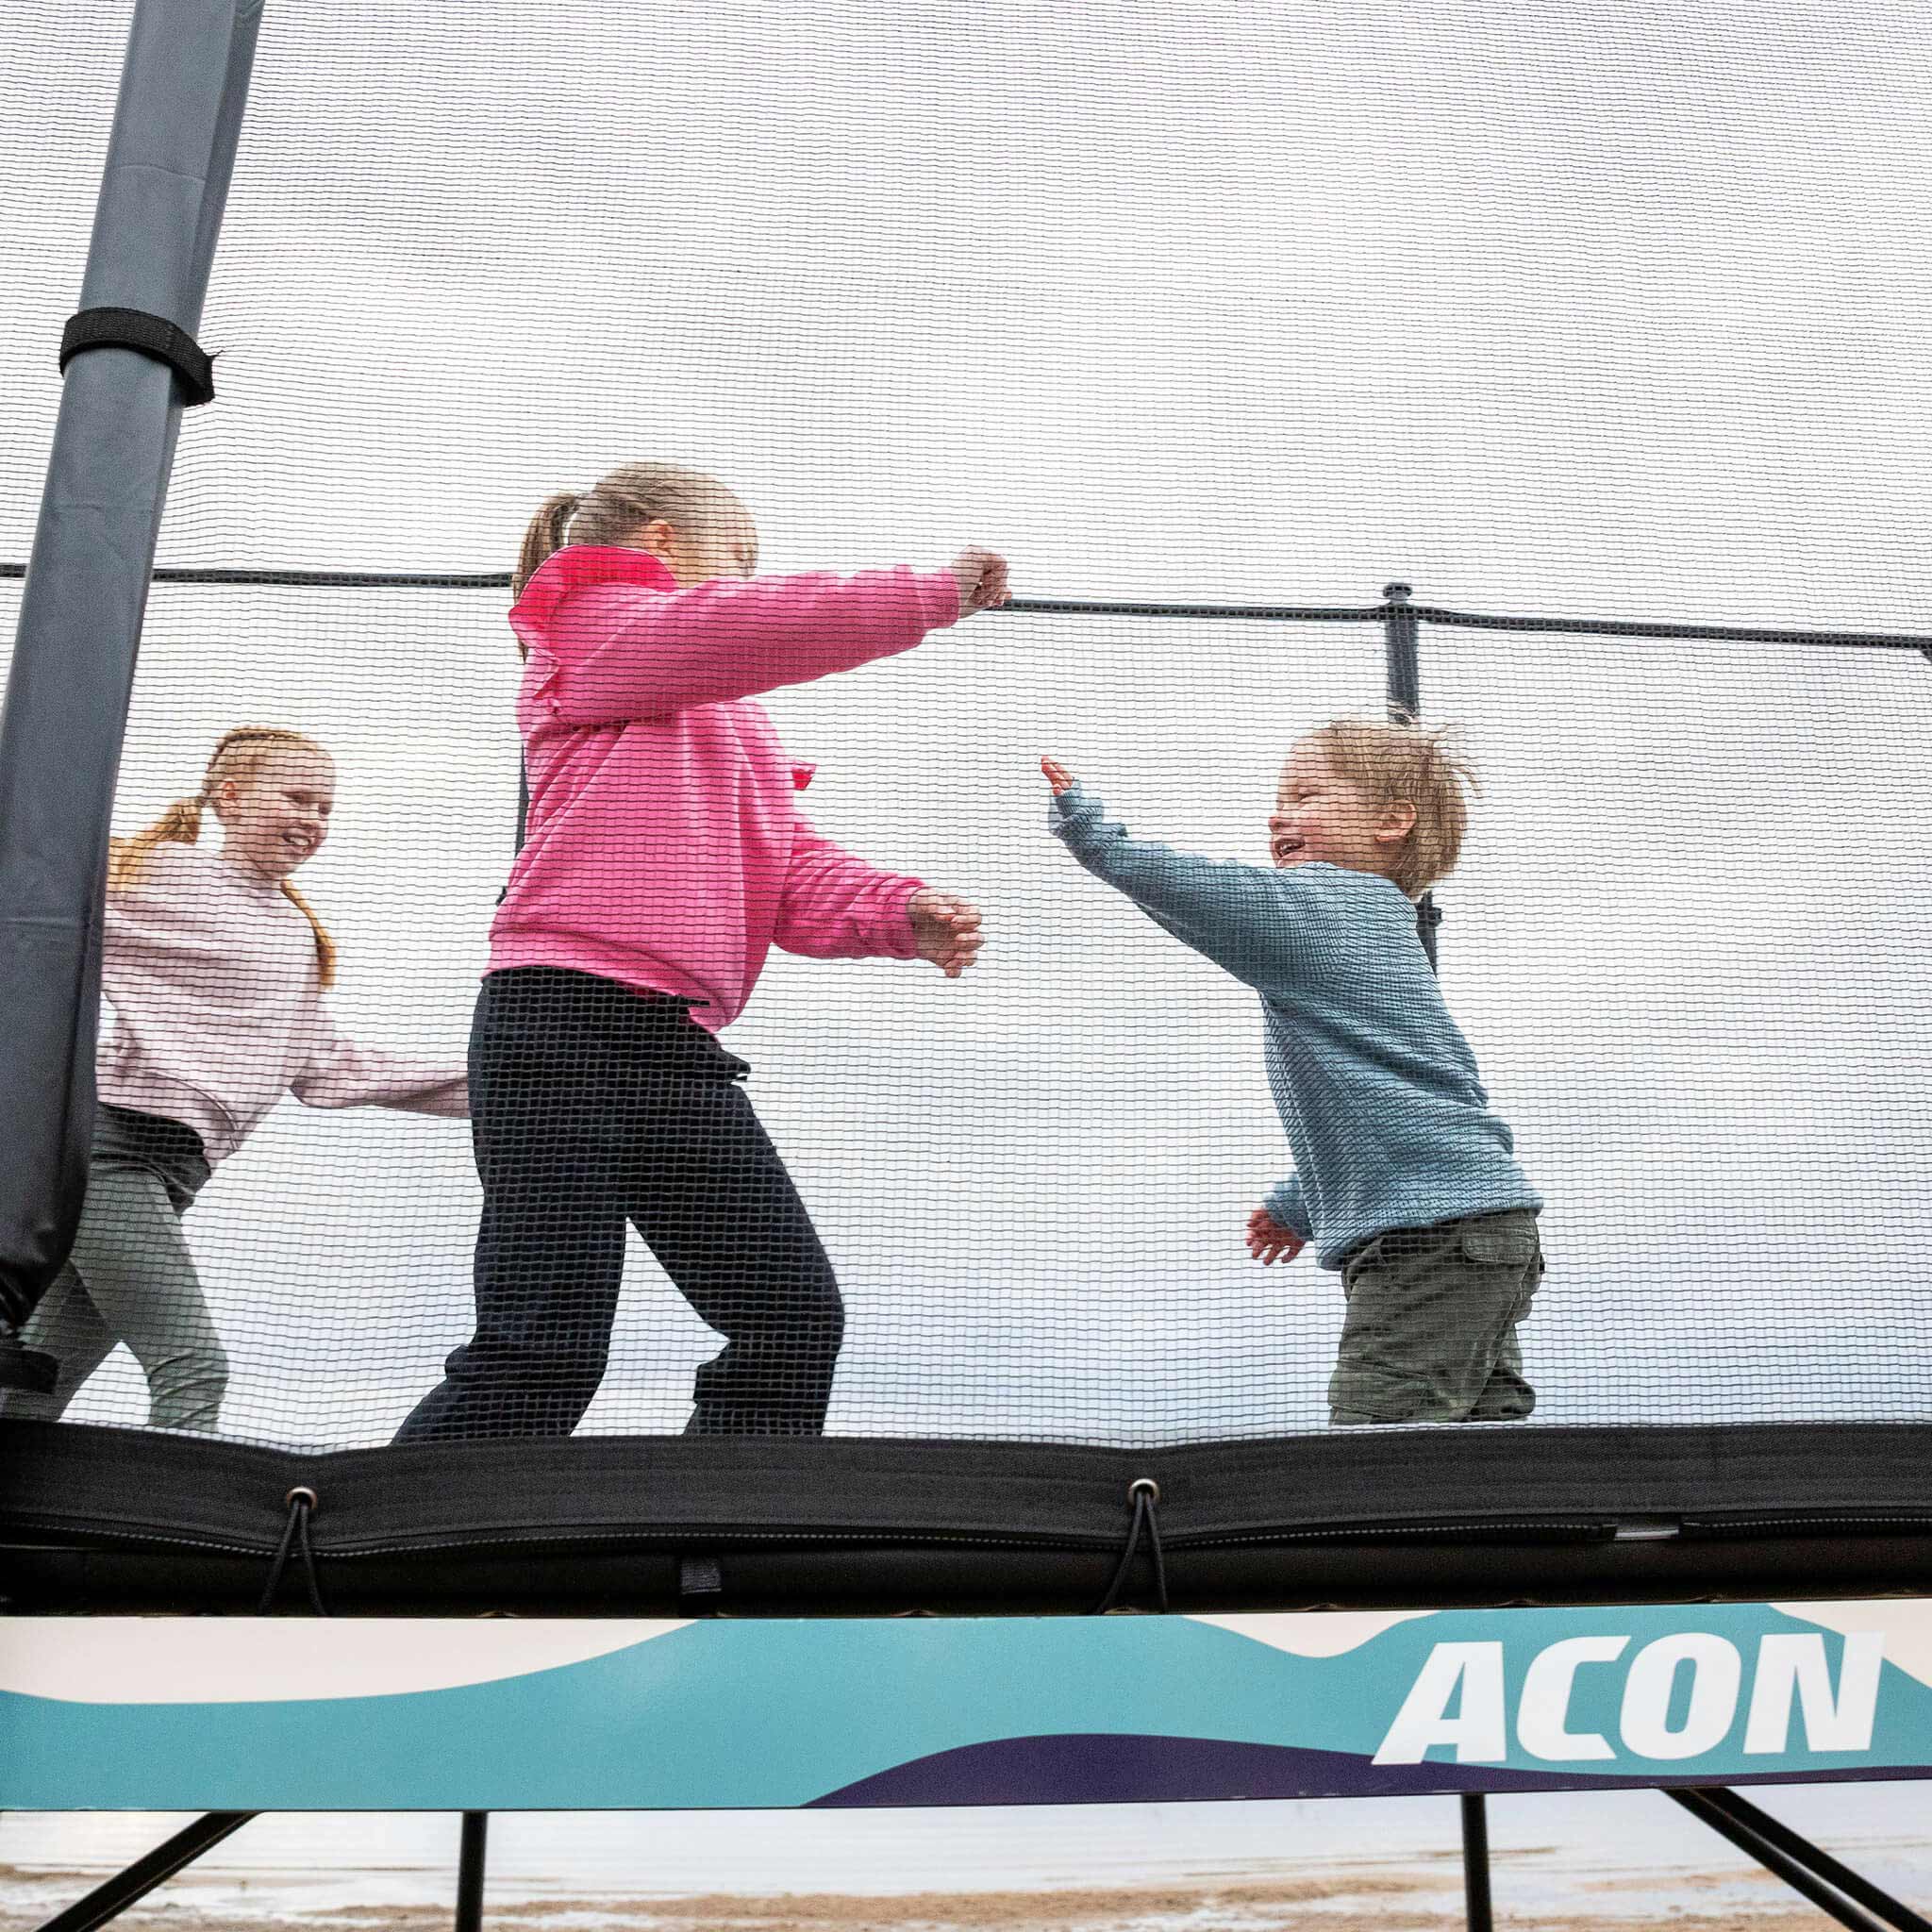 Trois enfants jouent sur l'Acon X Trampoline.